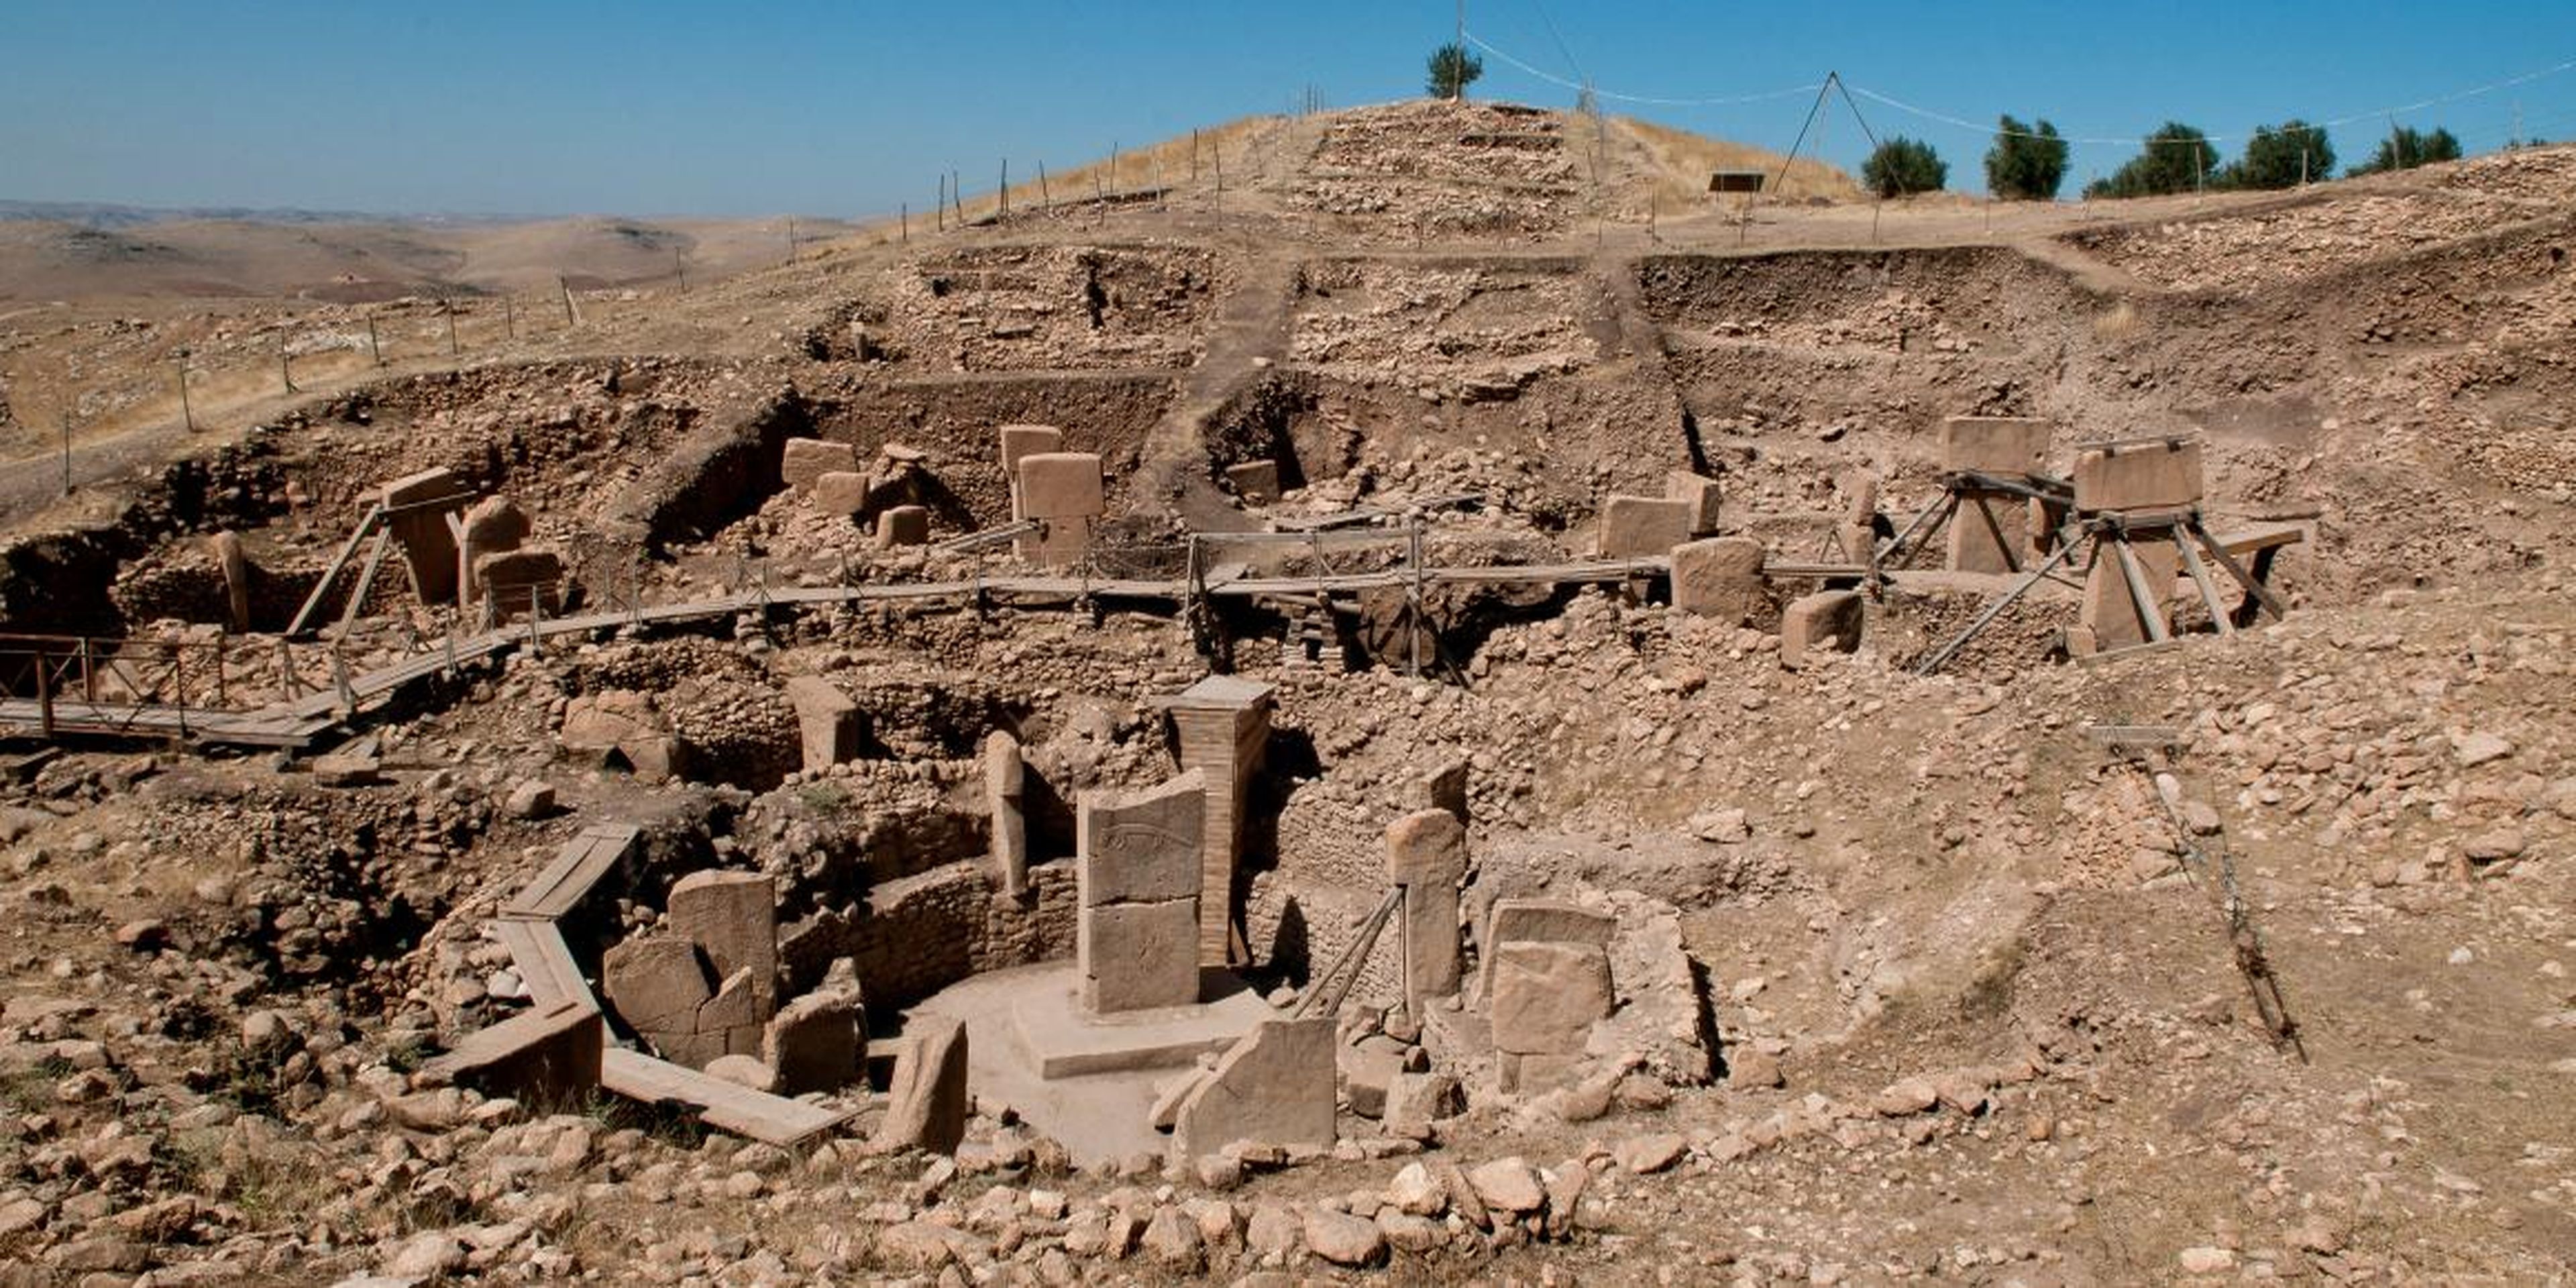 El edificio más antiguo que conocemos es Göbekli Tepe, en la actual Turquía. Fue construido alrededor del año 9.500 a.C., los arqueólogos no están seguros de su función, pero probablemente era un sitio religioso.